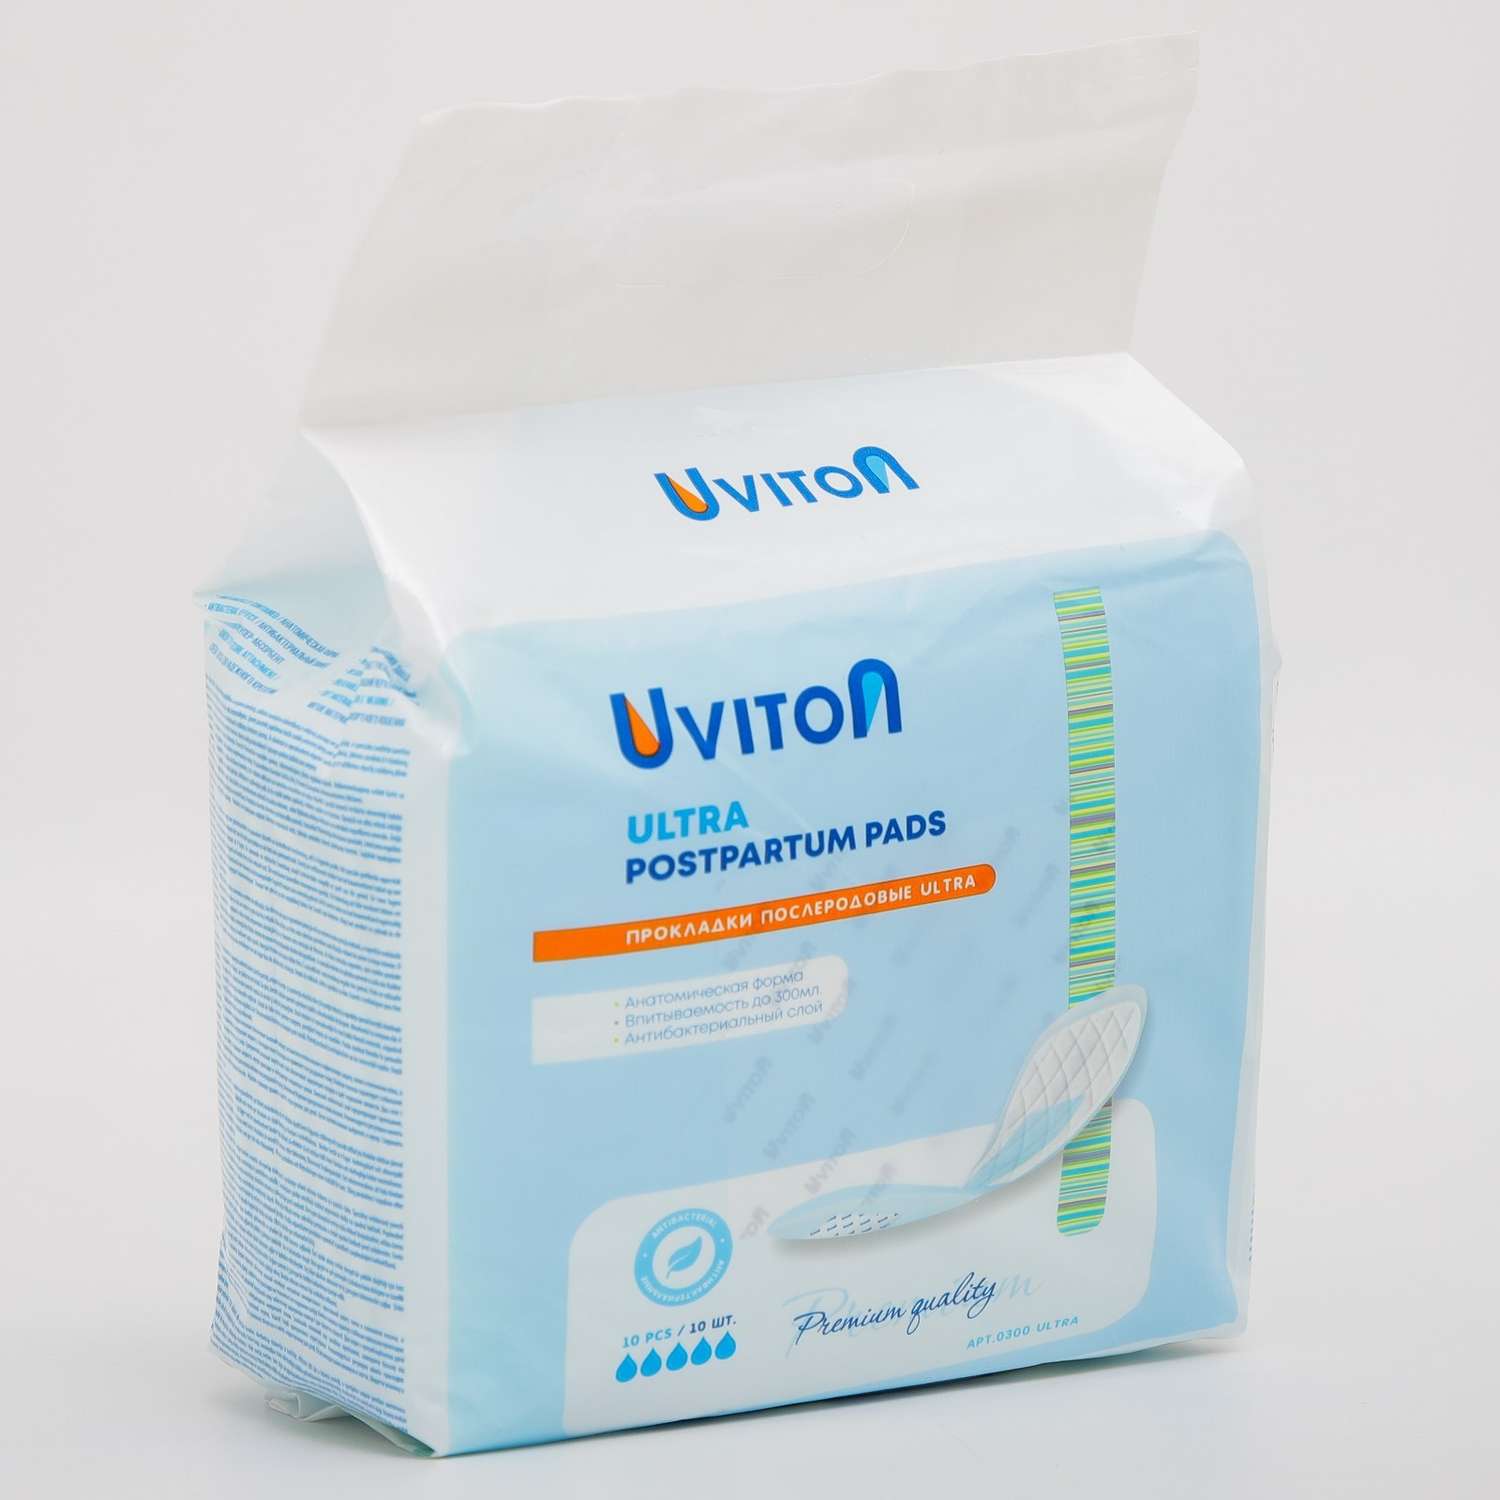 Набор Uviton Прокладки послеродовые ультравпитывающие Ultra и Подгузник Uviton разм. S 1 шт - фото 7